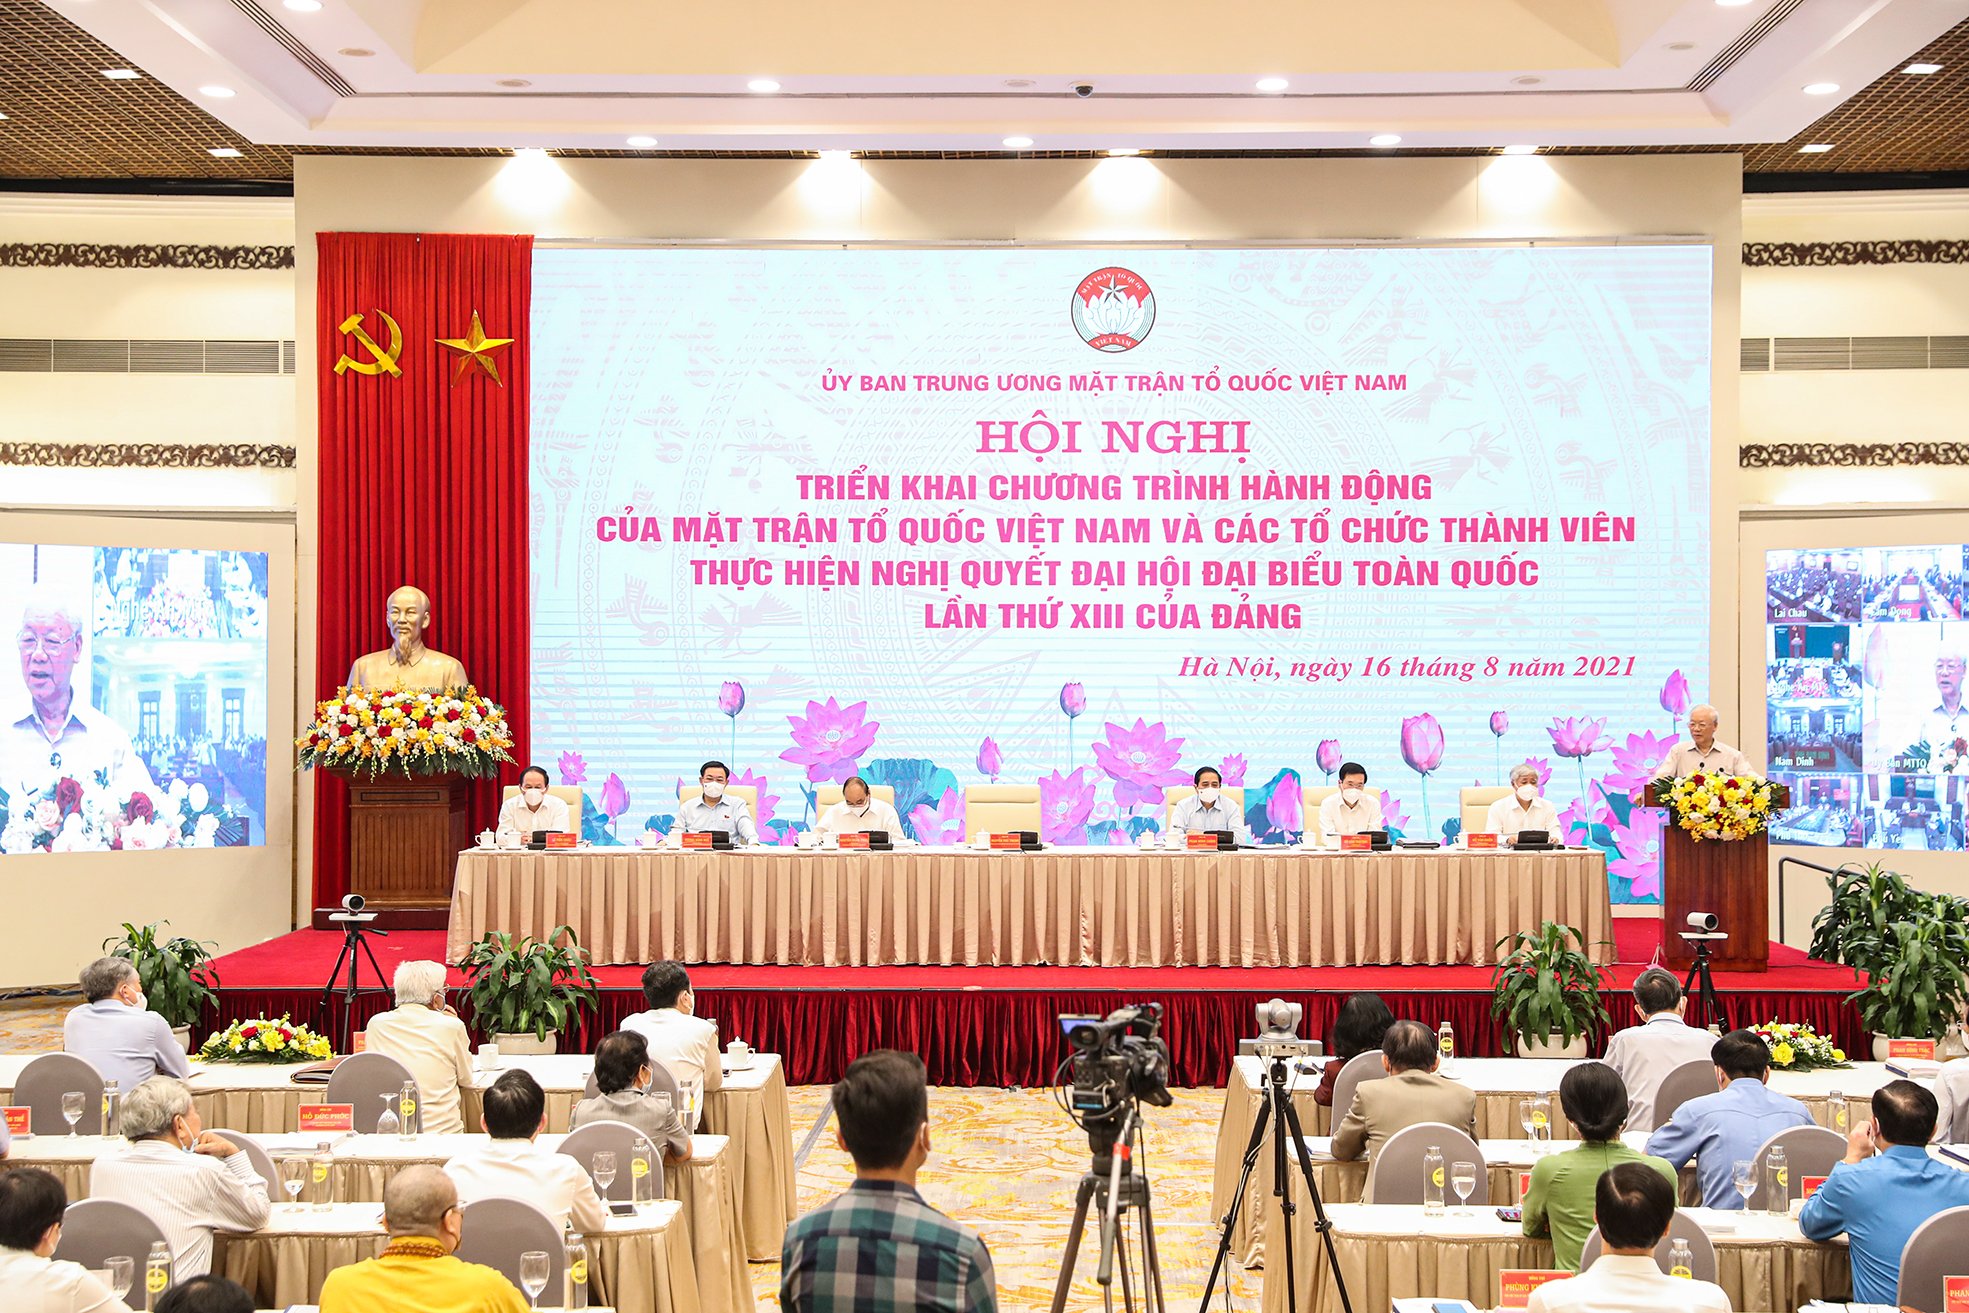 Tổng Bí thư Nguyễn Phú Trọng: Tiến tới xây dựng một chiến lược đại đoàn kết toàn dân tộc trong giai đoạn cách mạng mới